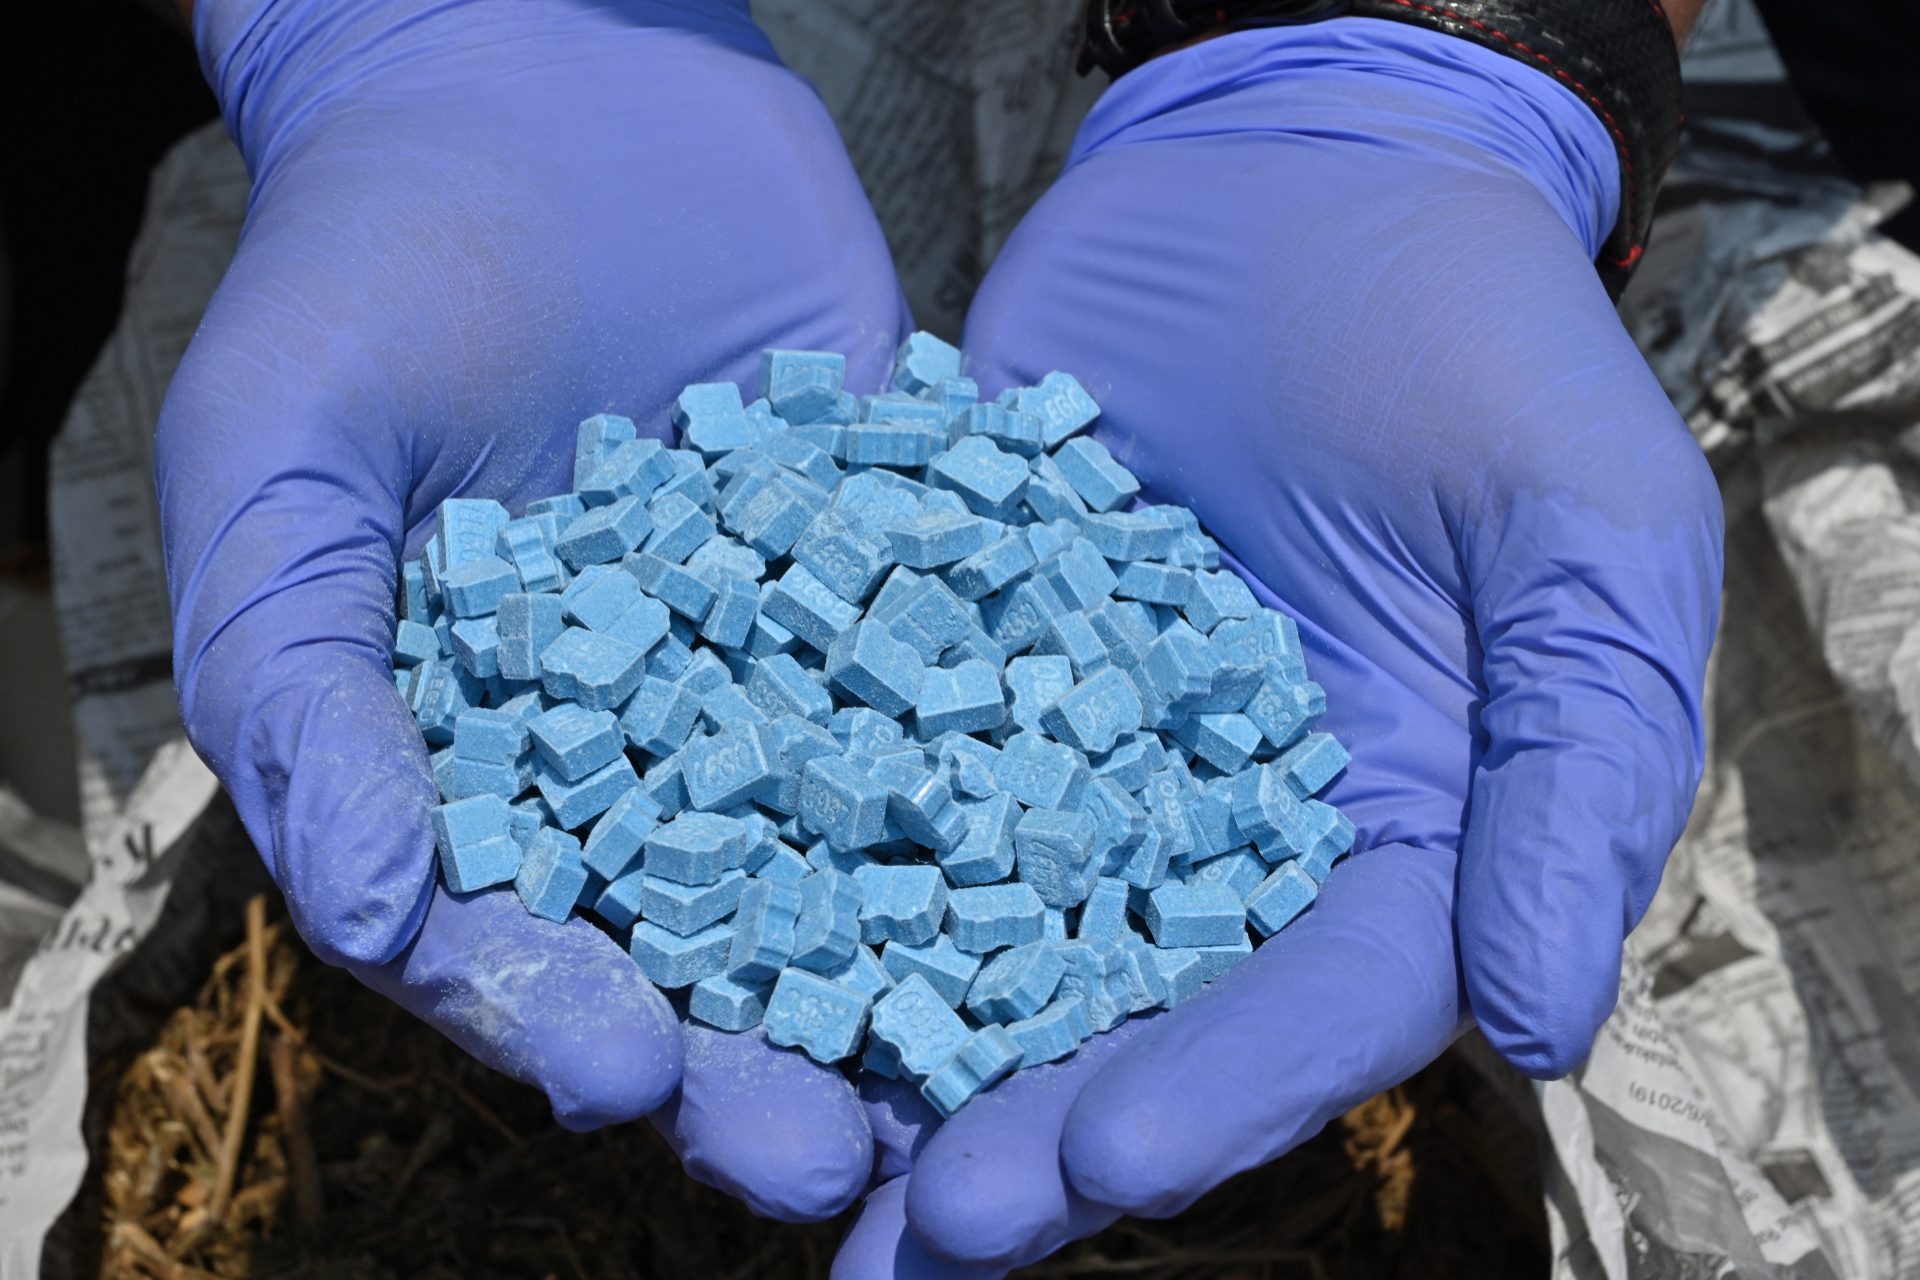 Des experts américains refusent un médicament à base d'ecstasy